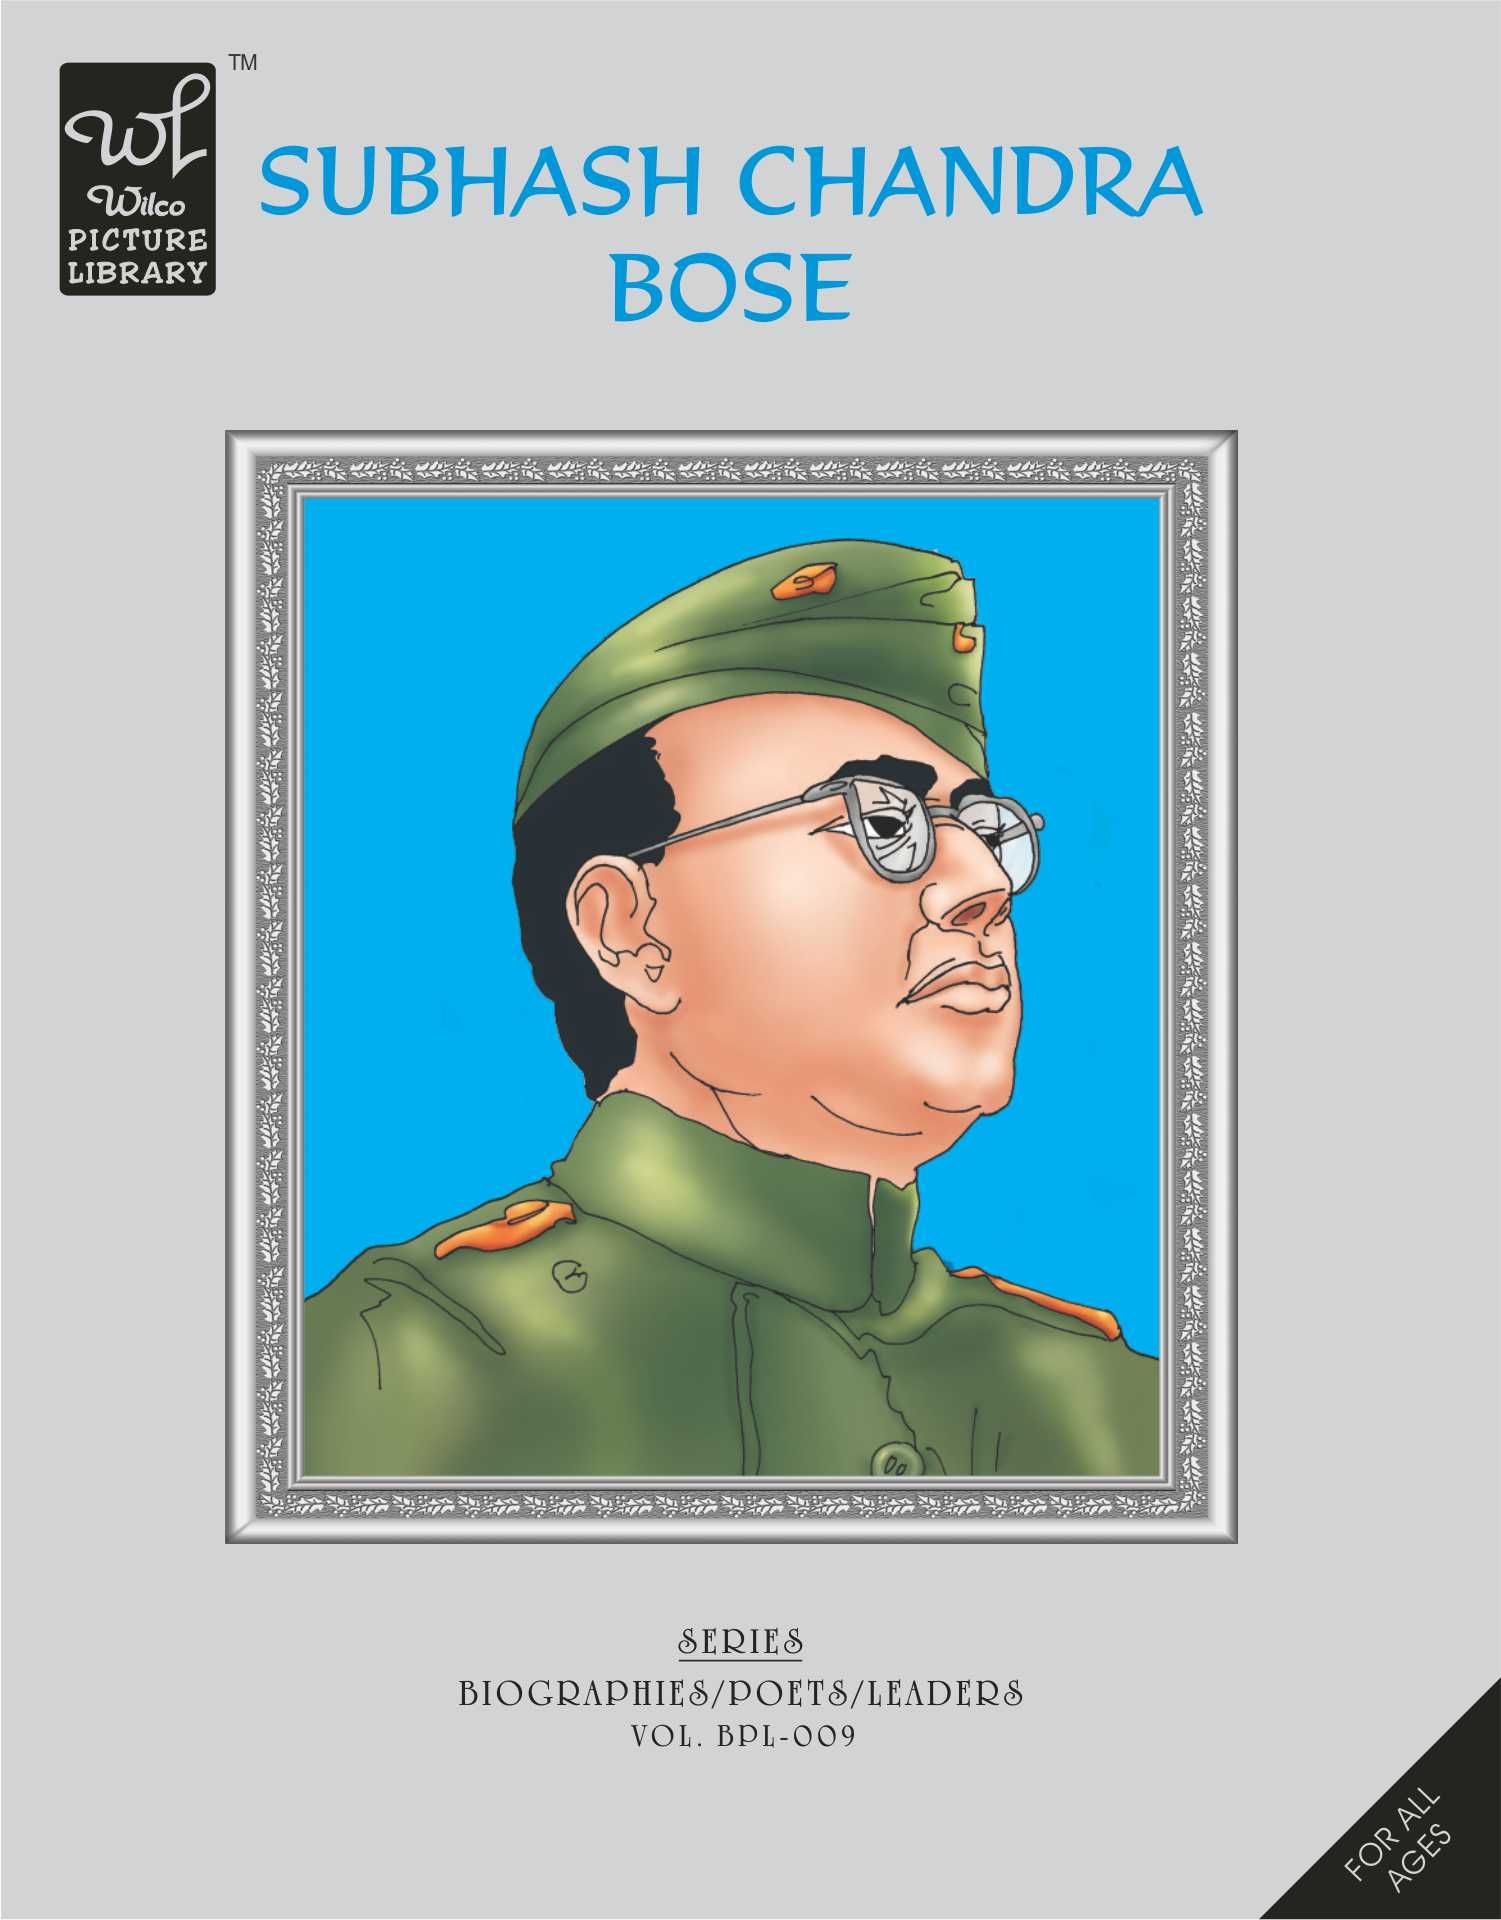 WPL:Subhash Chandra Bose